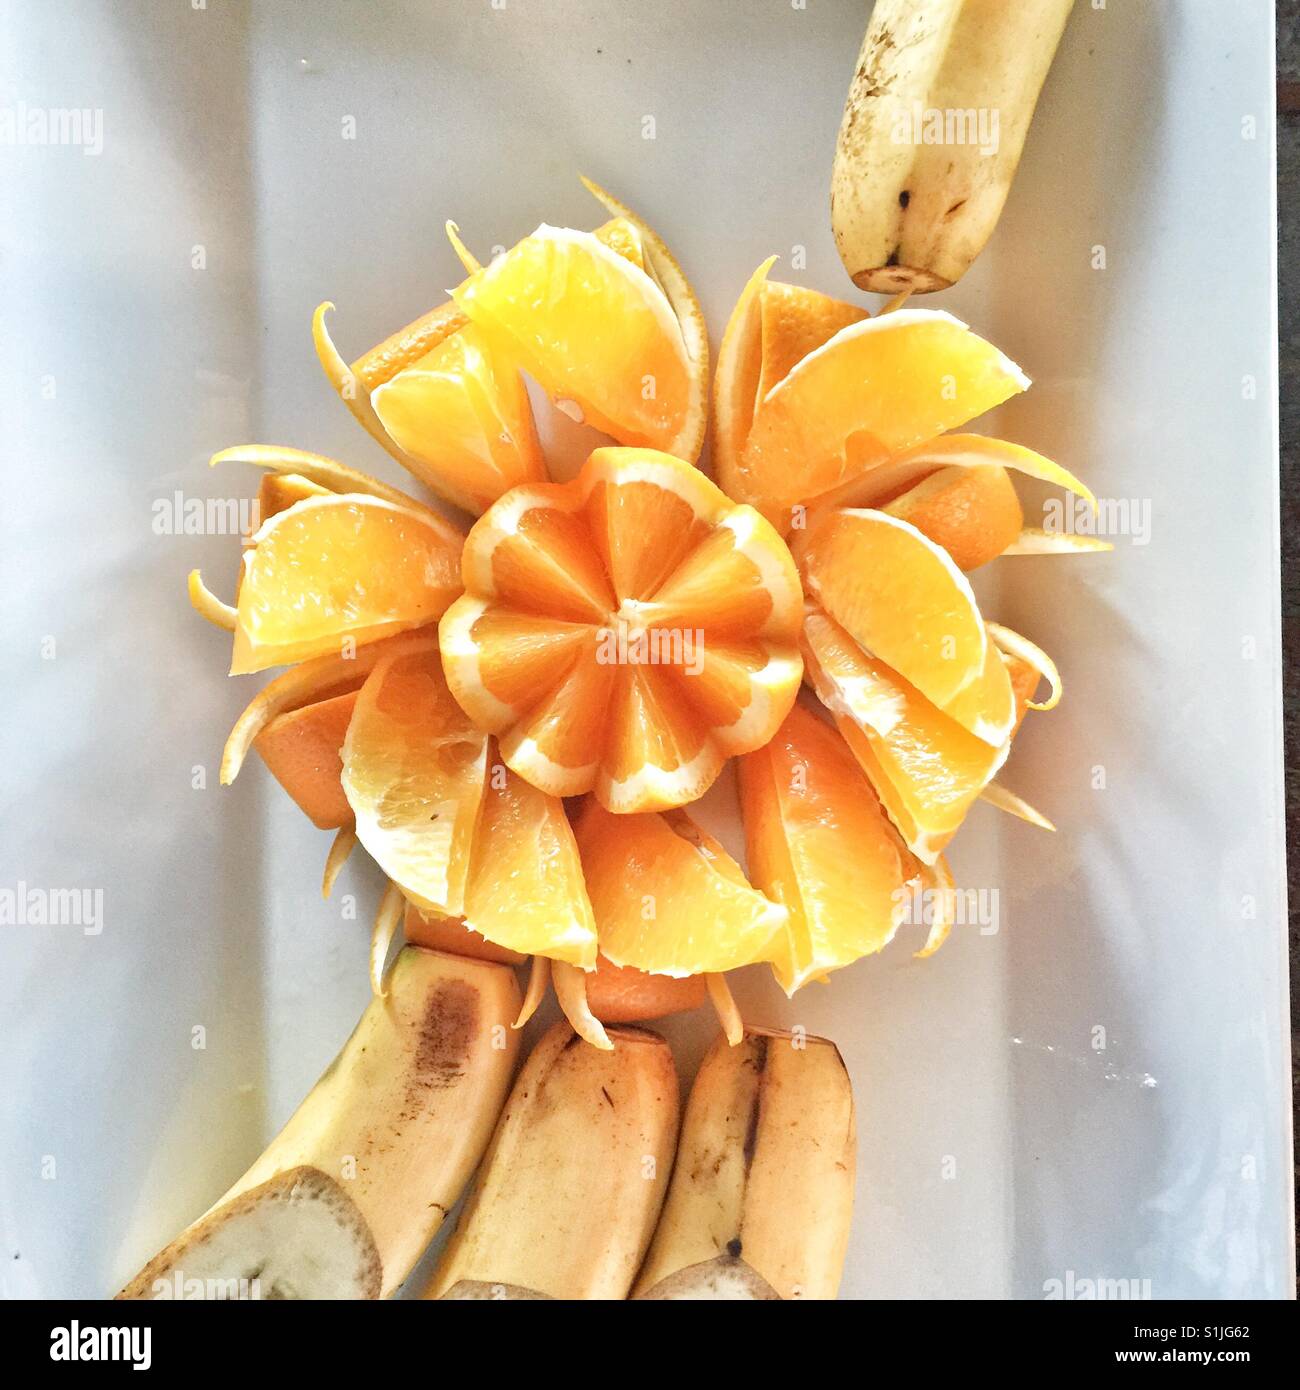 Orange künstlerisch geschnitten und präsentiert auf weißen Teller mit Bananen Stockfoto